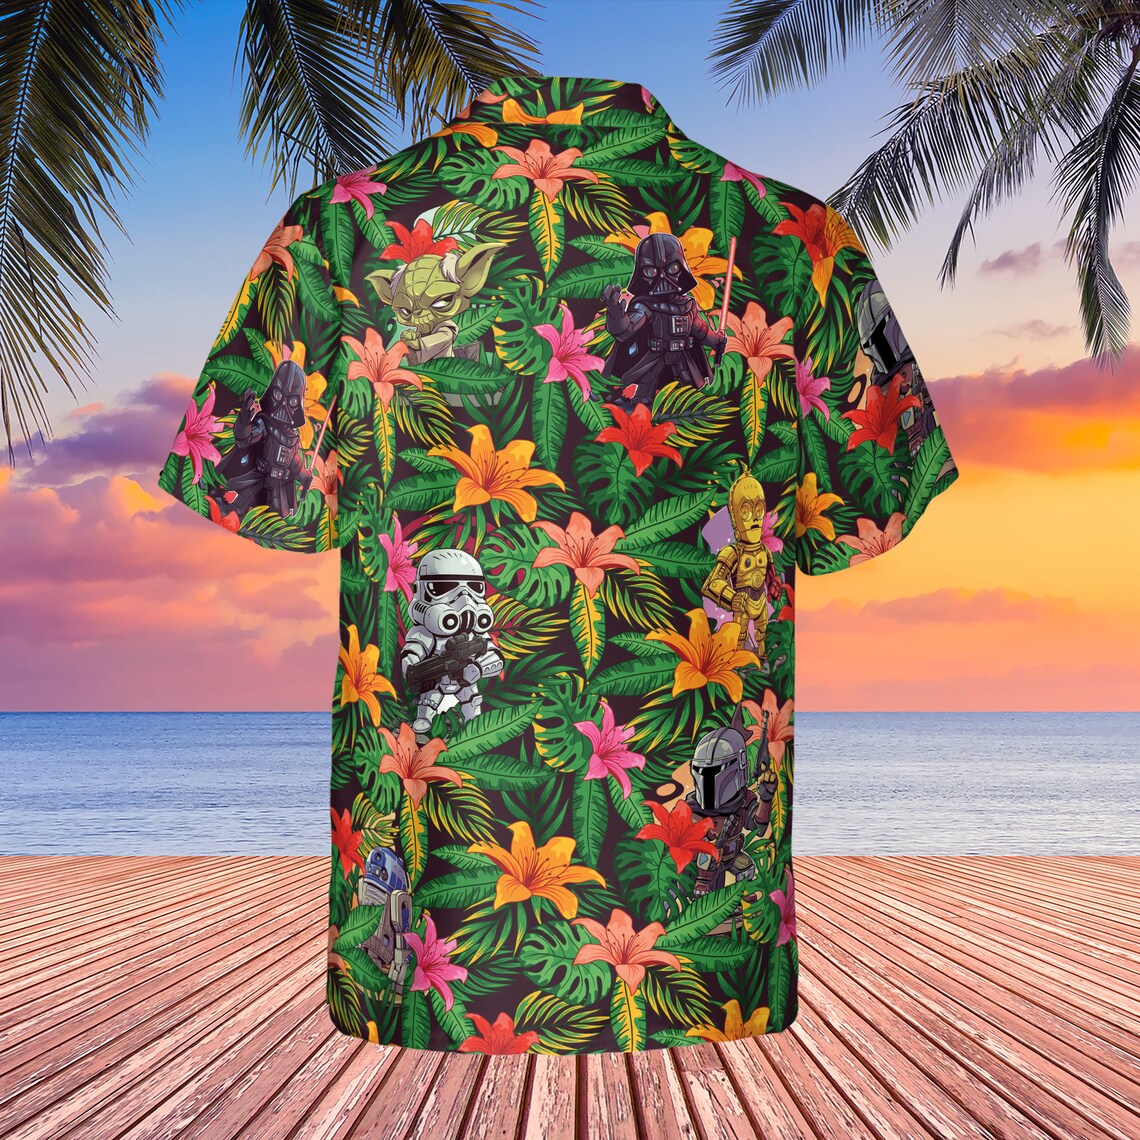 Star Wars Friends Lover Hawaiian Shirt - Zerelam